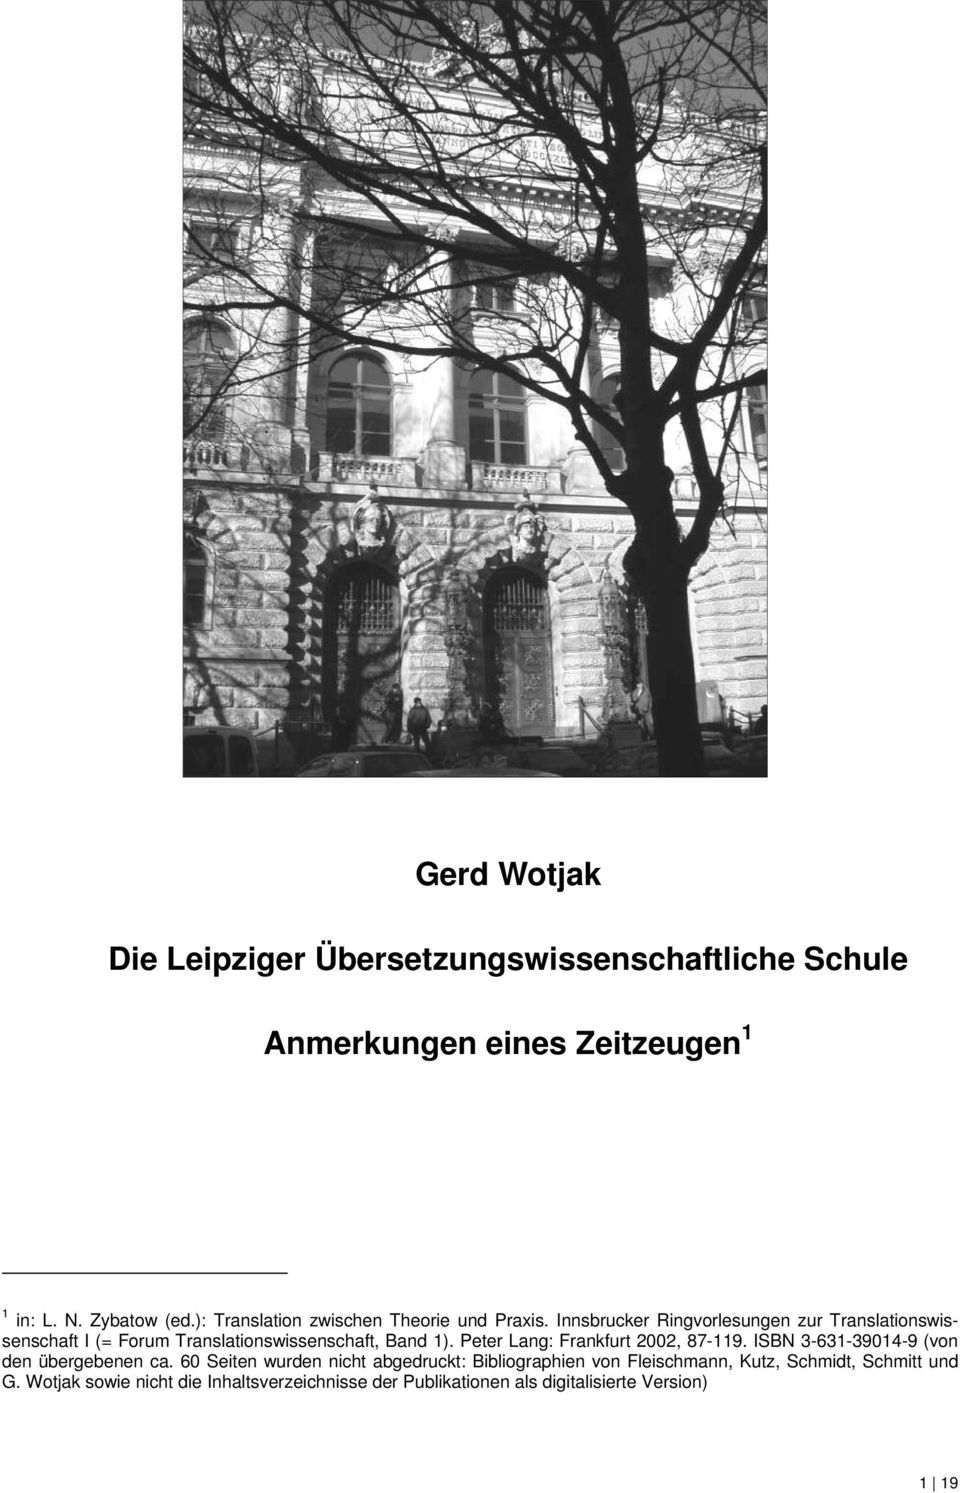 Innsbrucker Ringvorlesungen zur Translationswissenschaft I (= Forum Translationswissenschaft, Band 1).